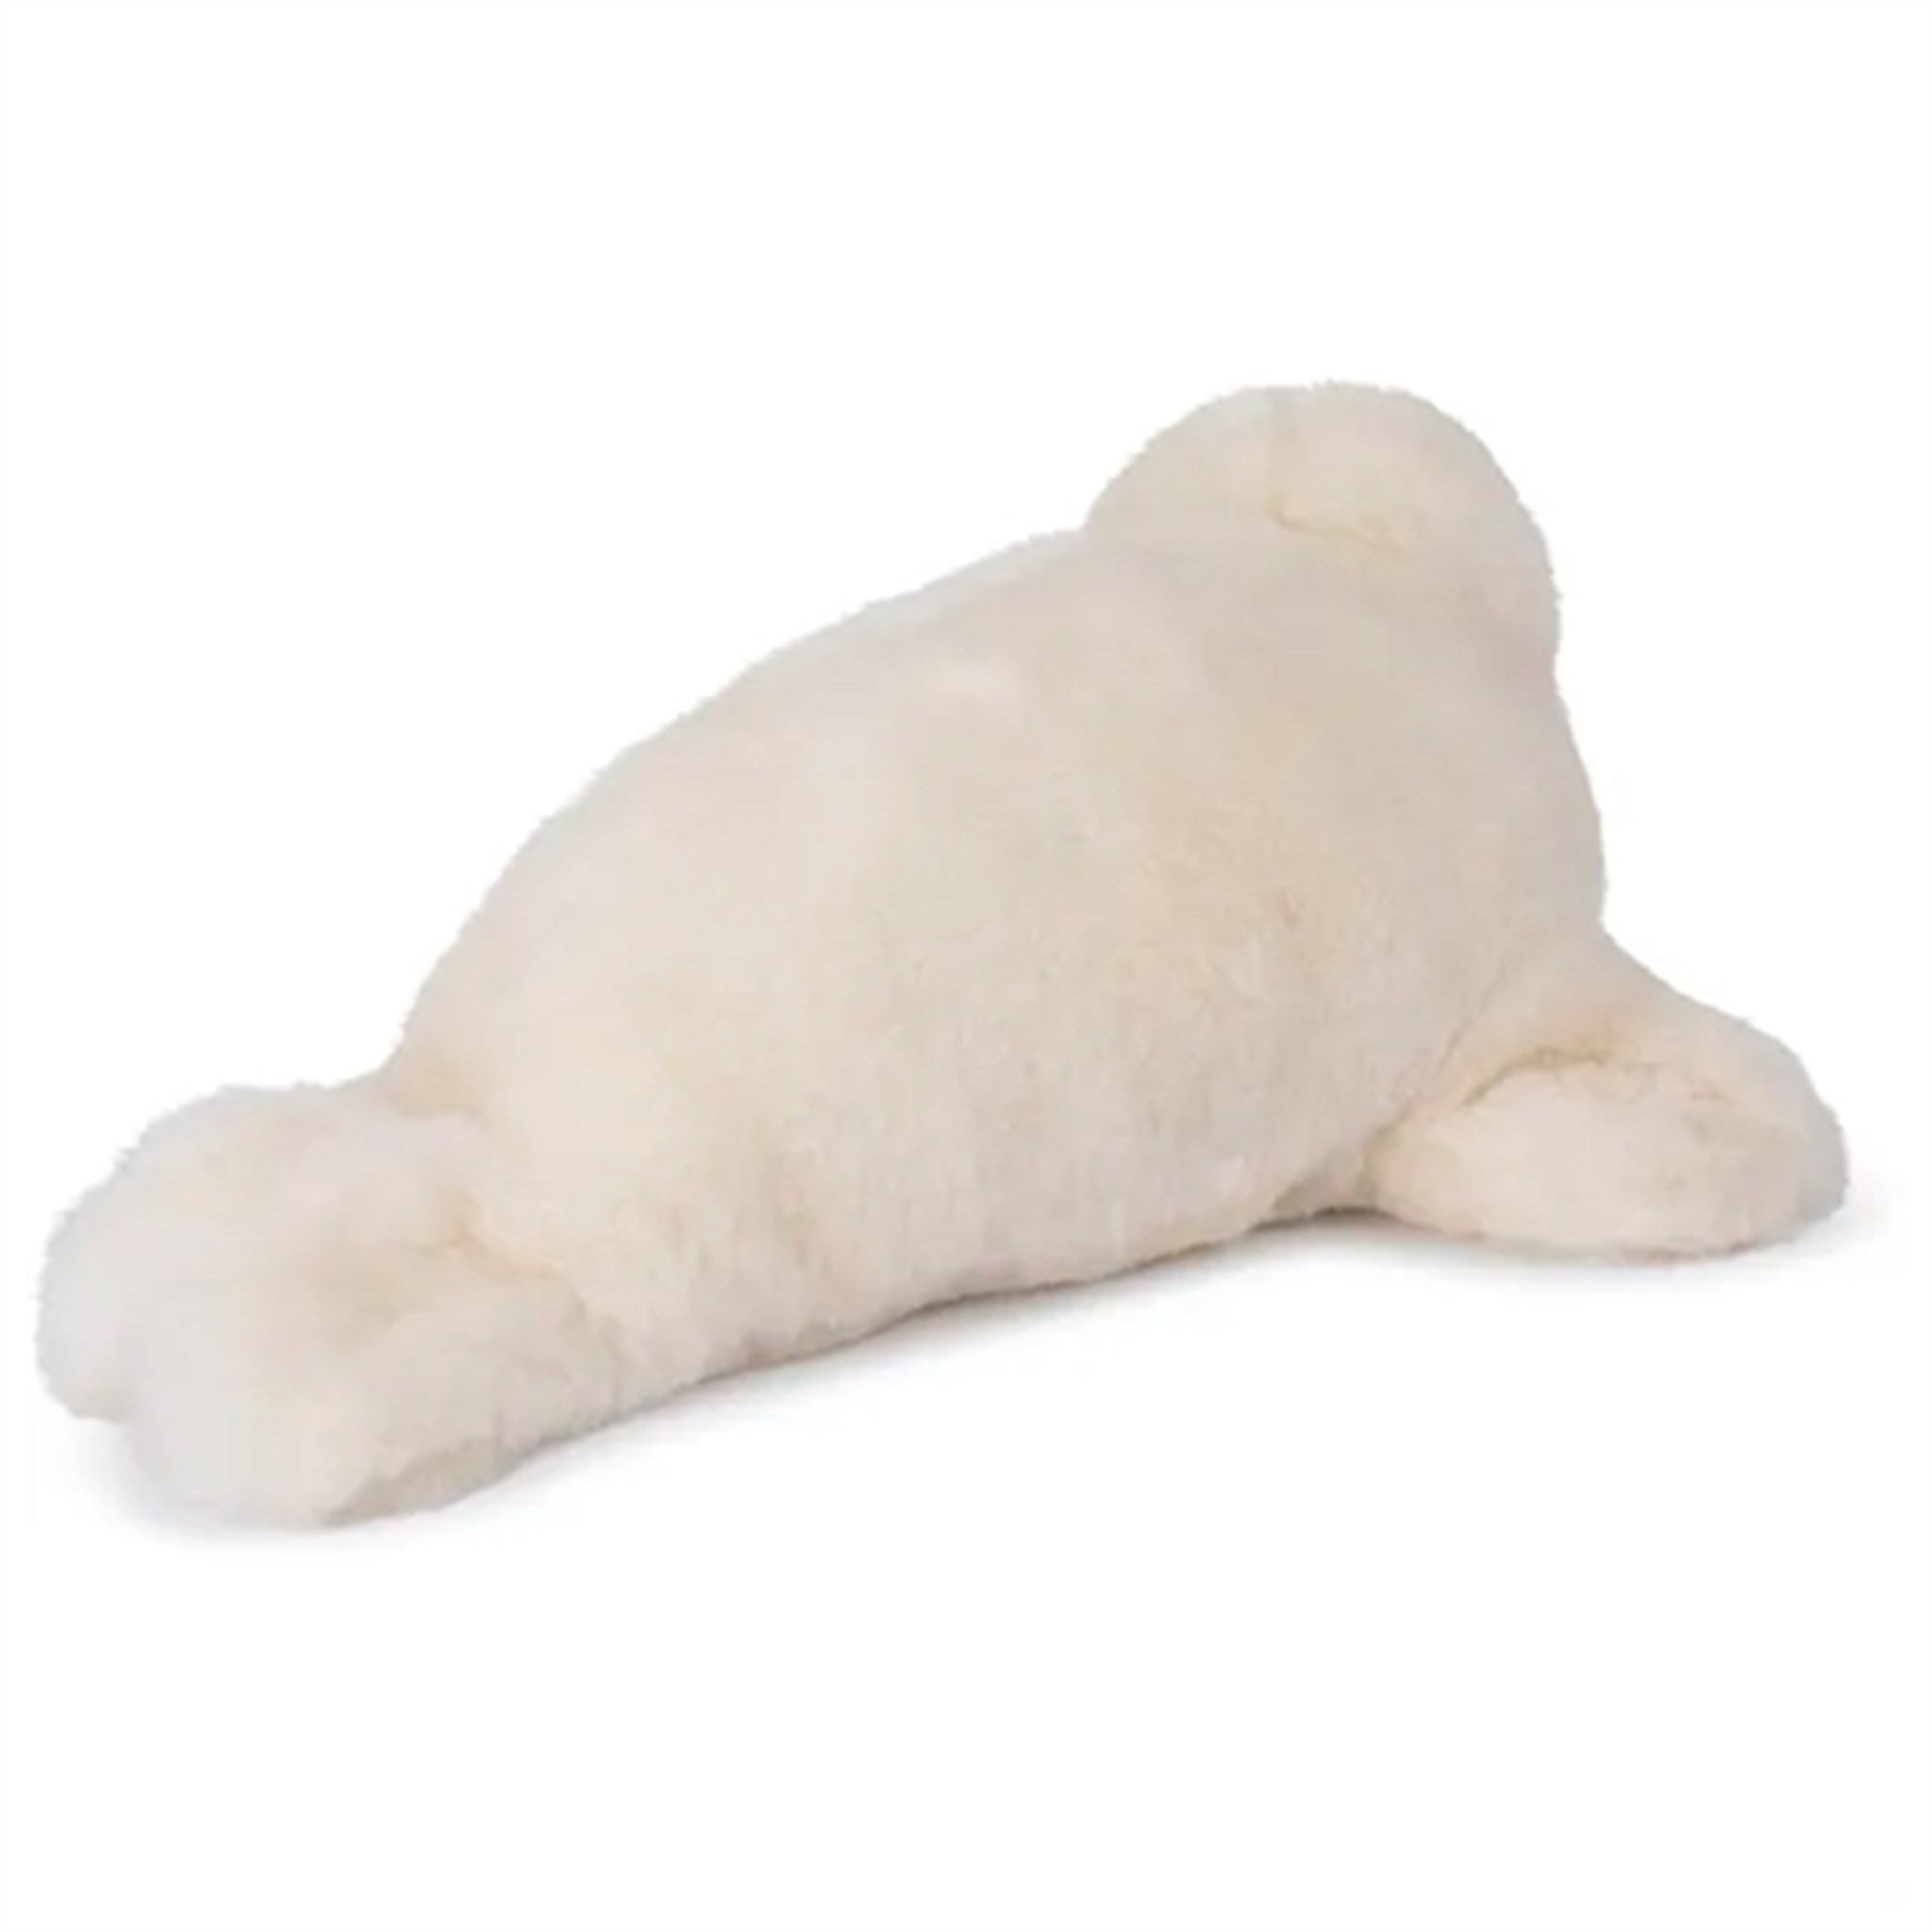 Bon Ton Toys WWF Plush Seal 38 cm 2